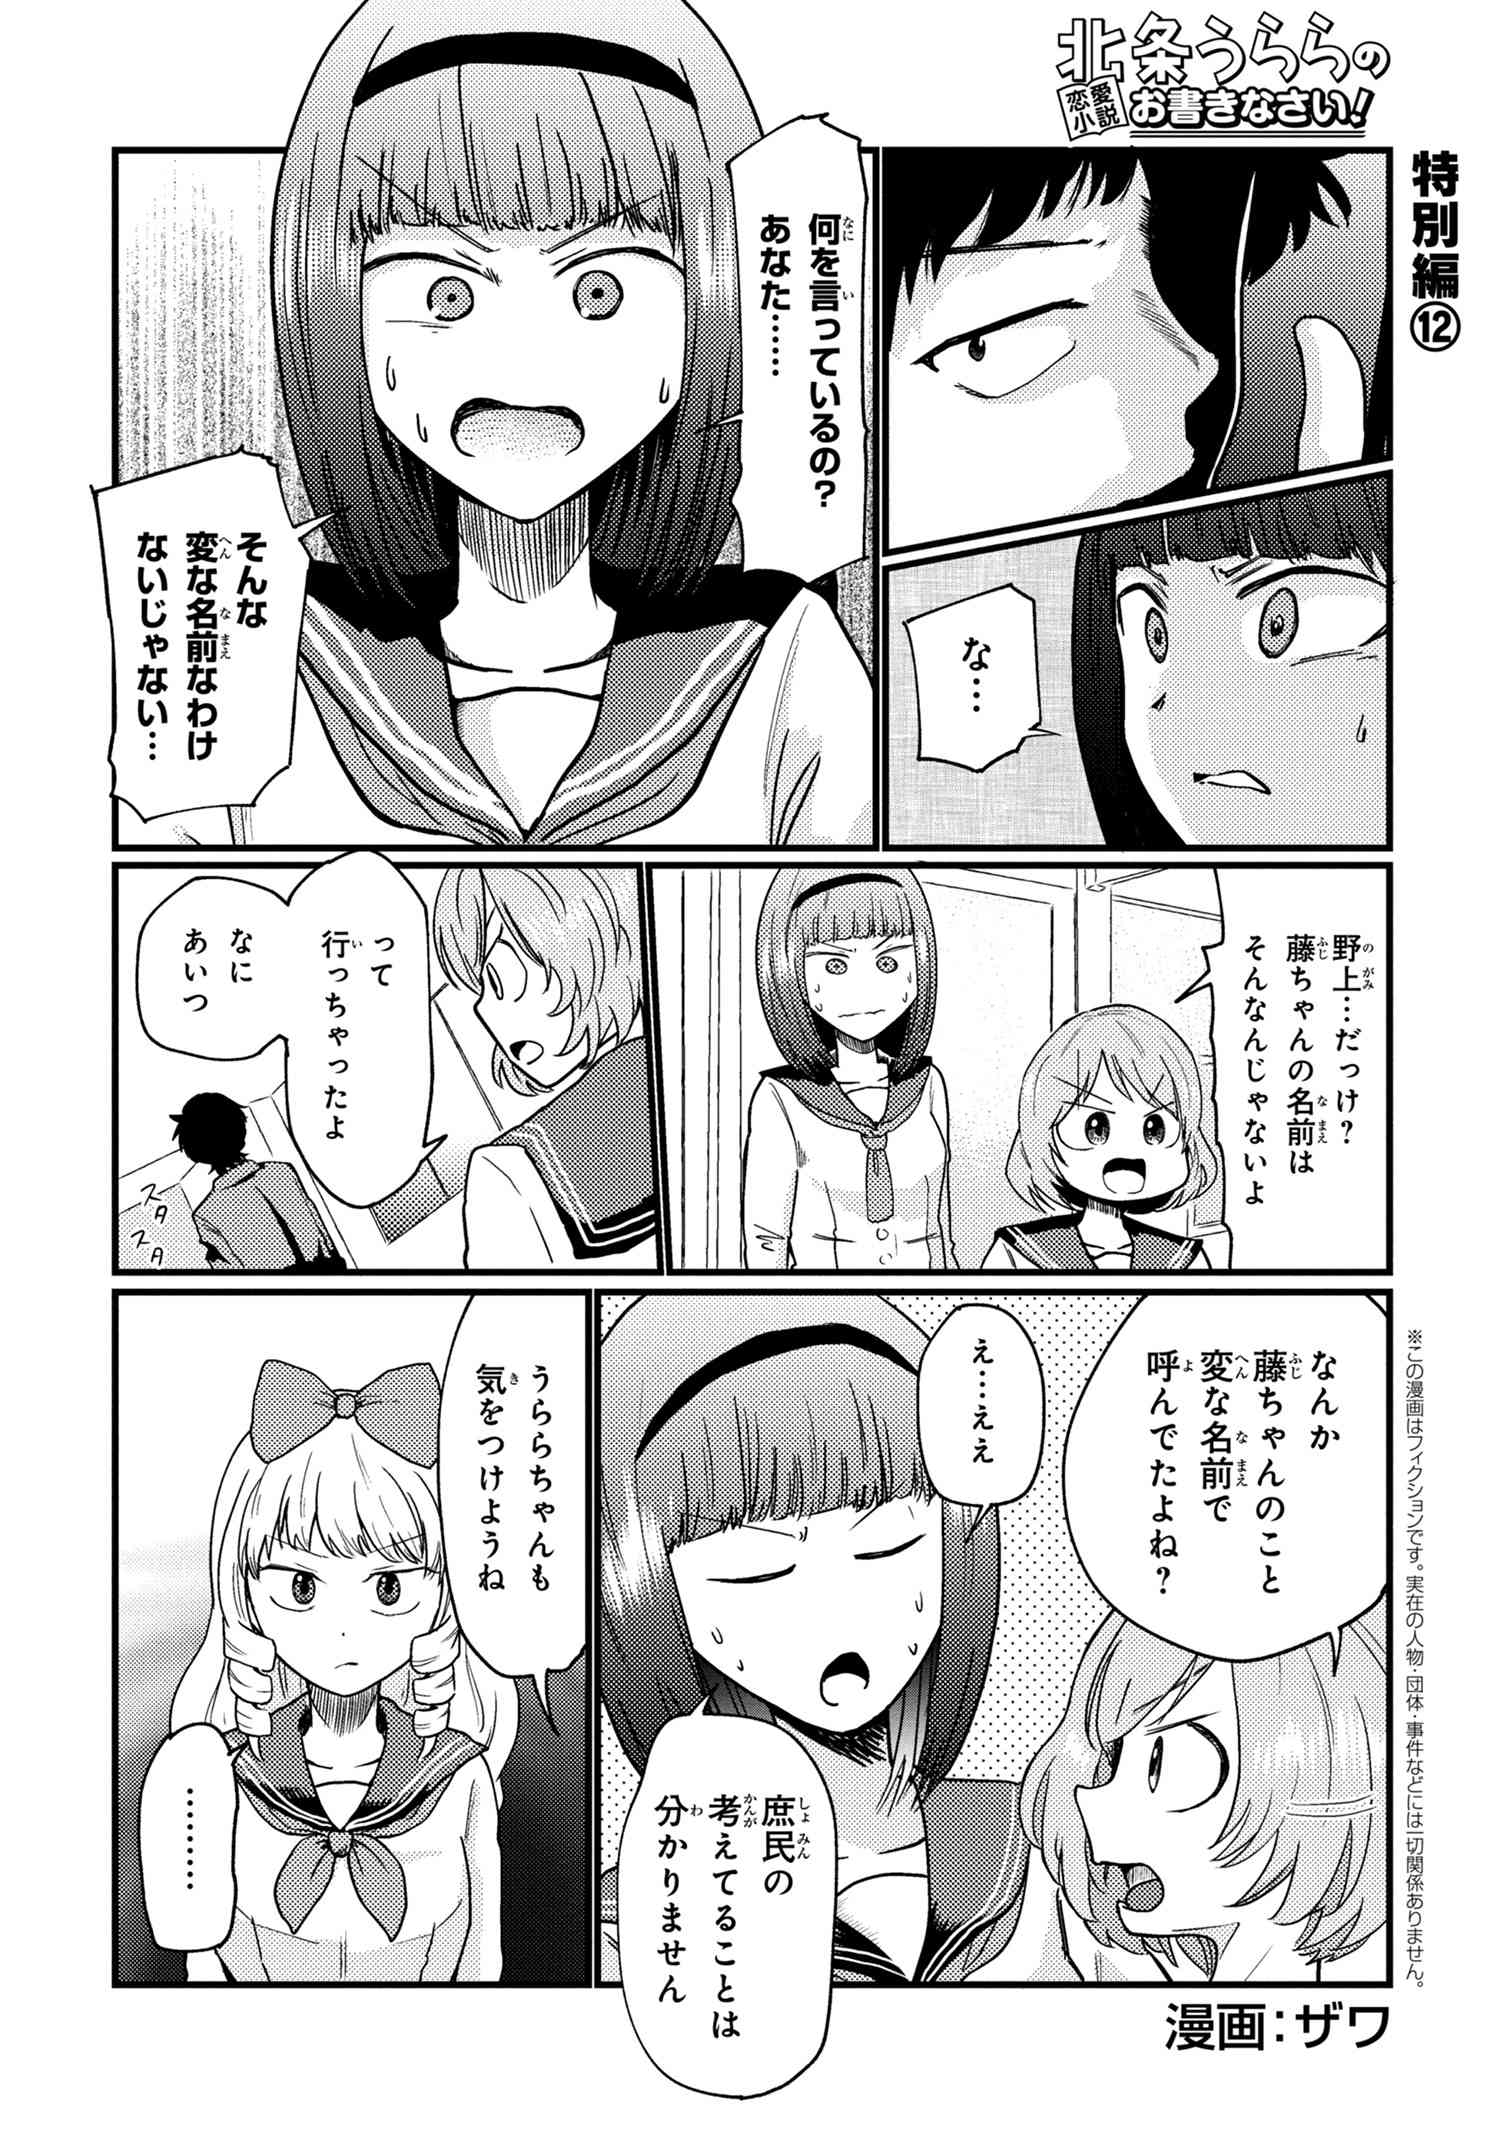 Houjou Urara no renai shousetsu o kaki nasai! - Chapter 12 - Page 1